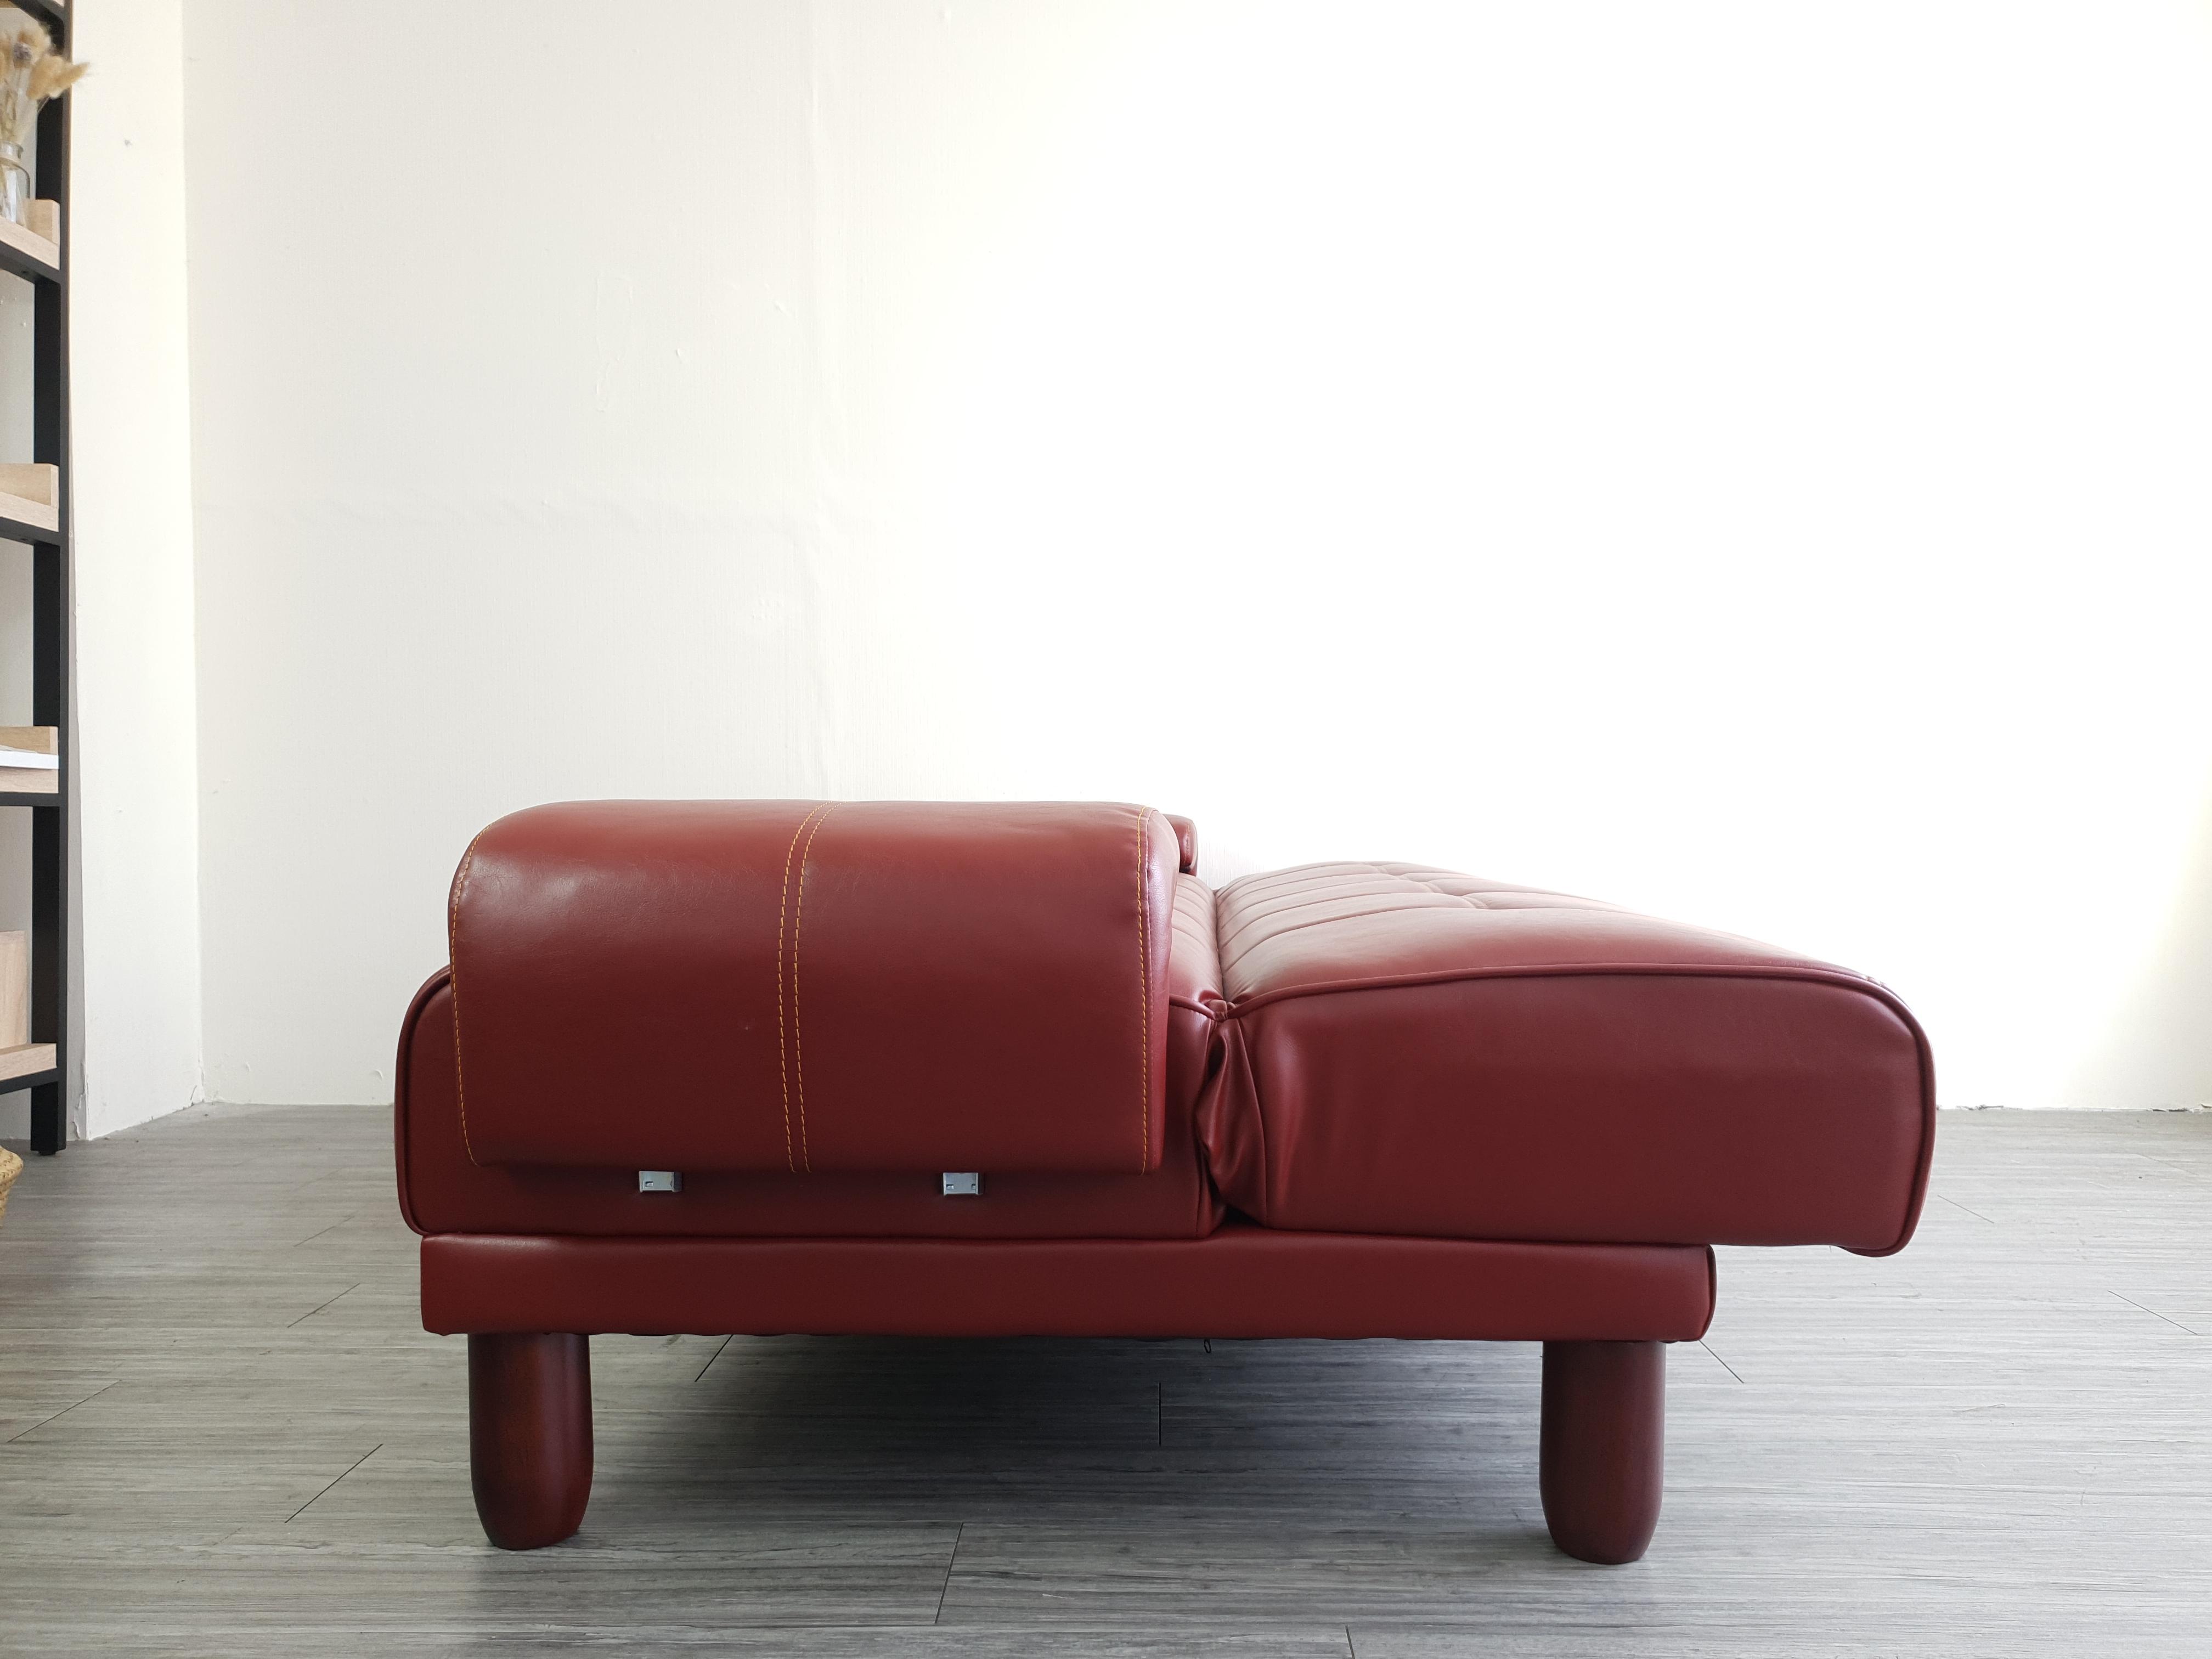 Sofa bed đa năng Juno sofa màu đỏ